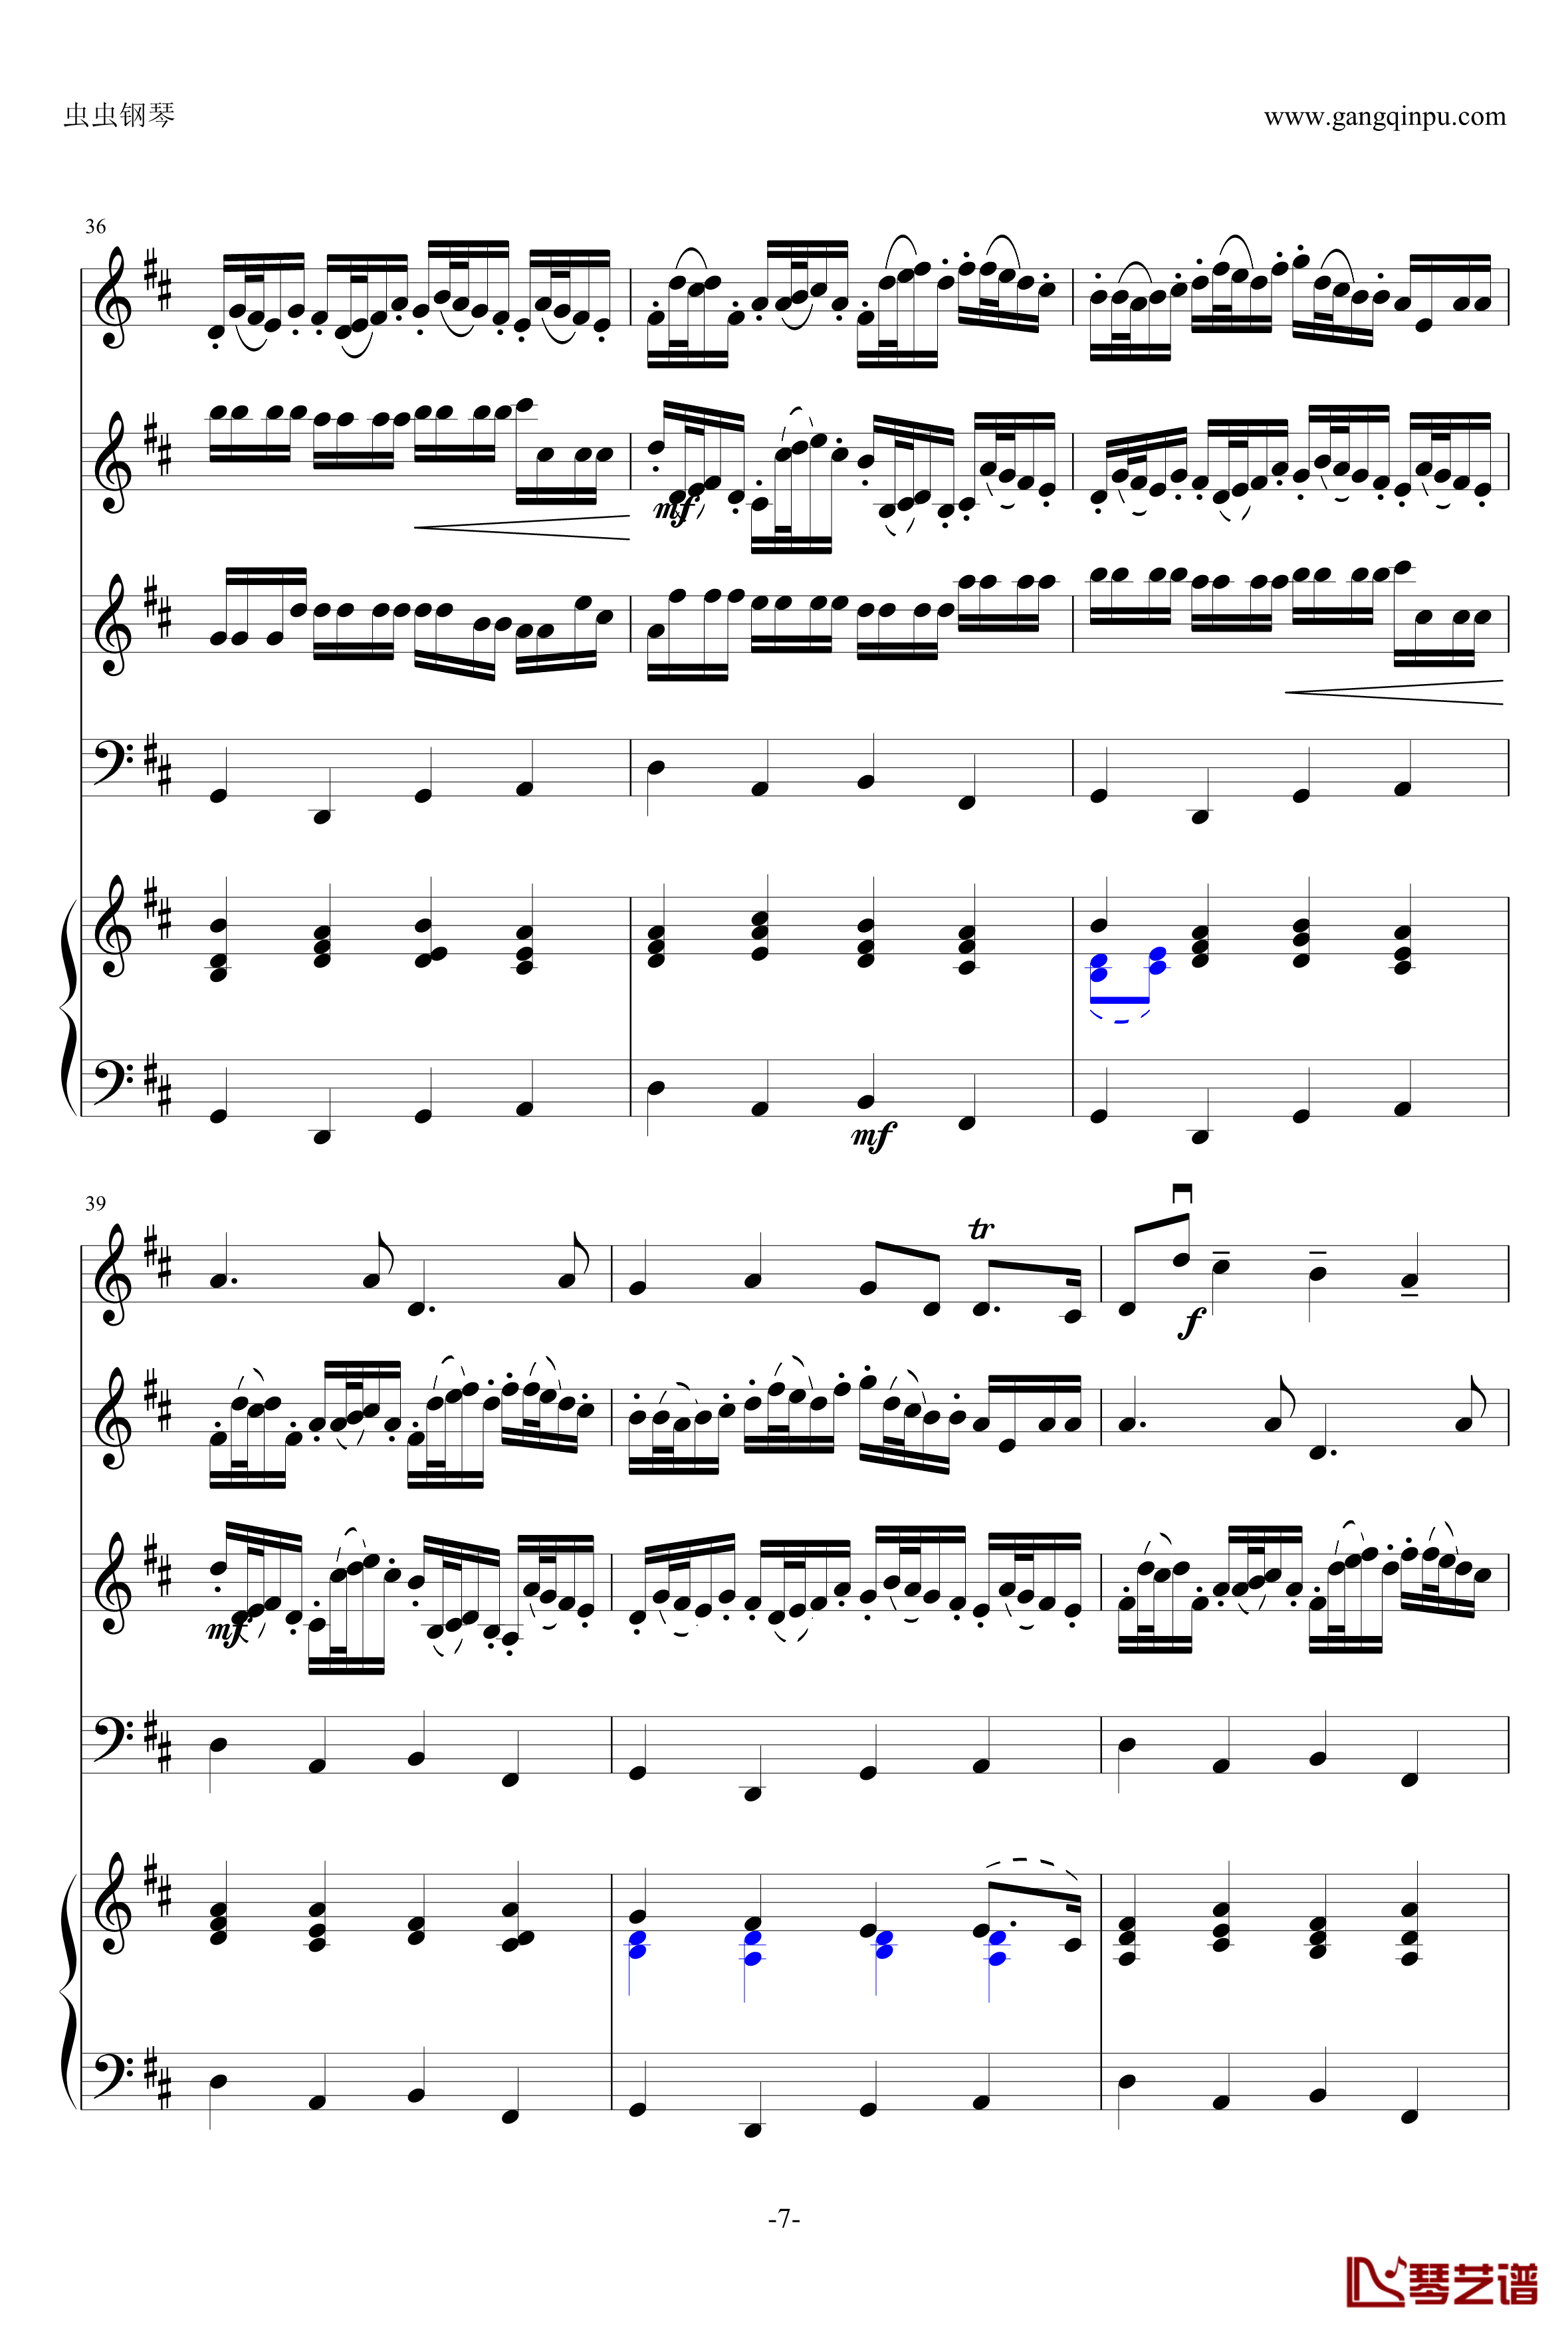 卡农钢琴谱-原版引进-帕赫贝尔-Pachelbel7